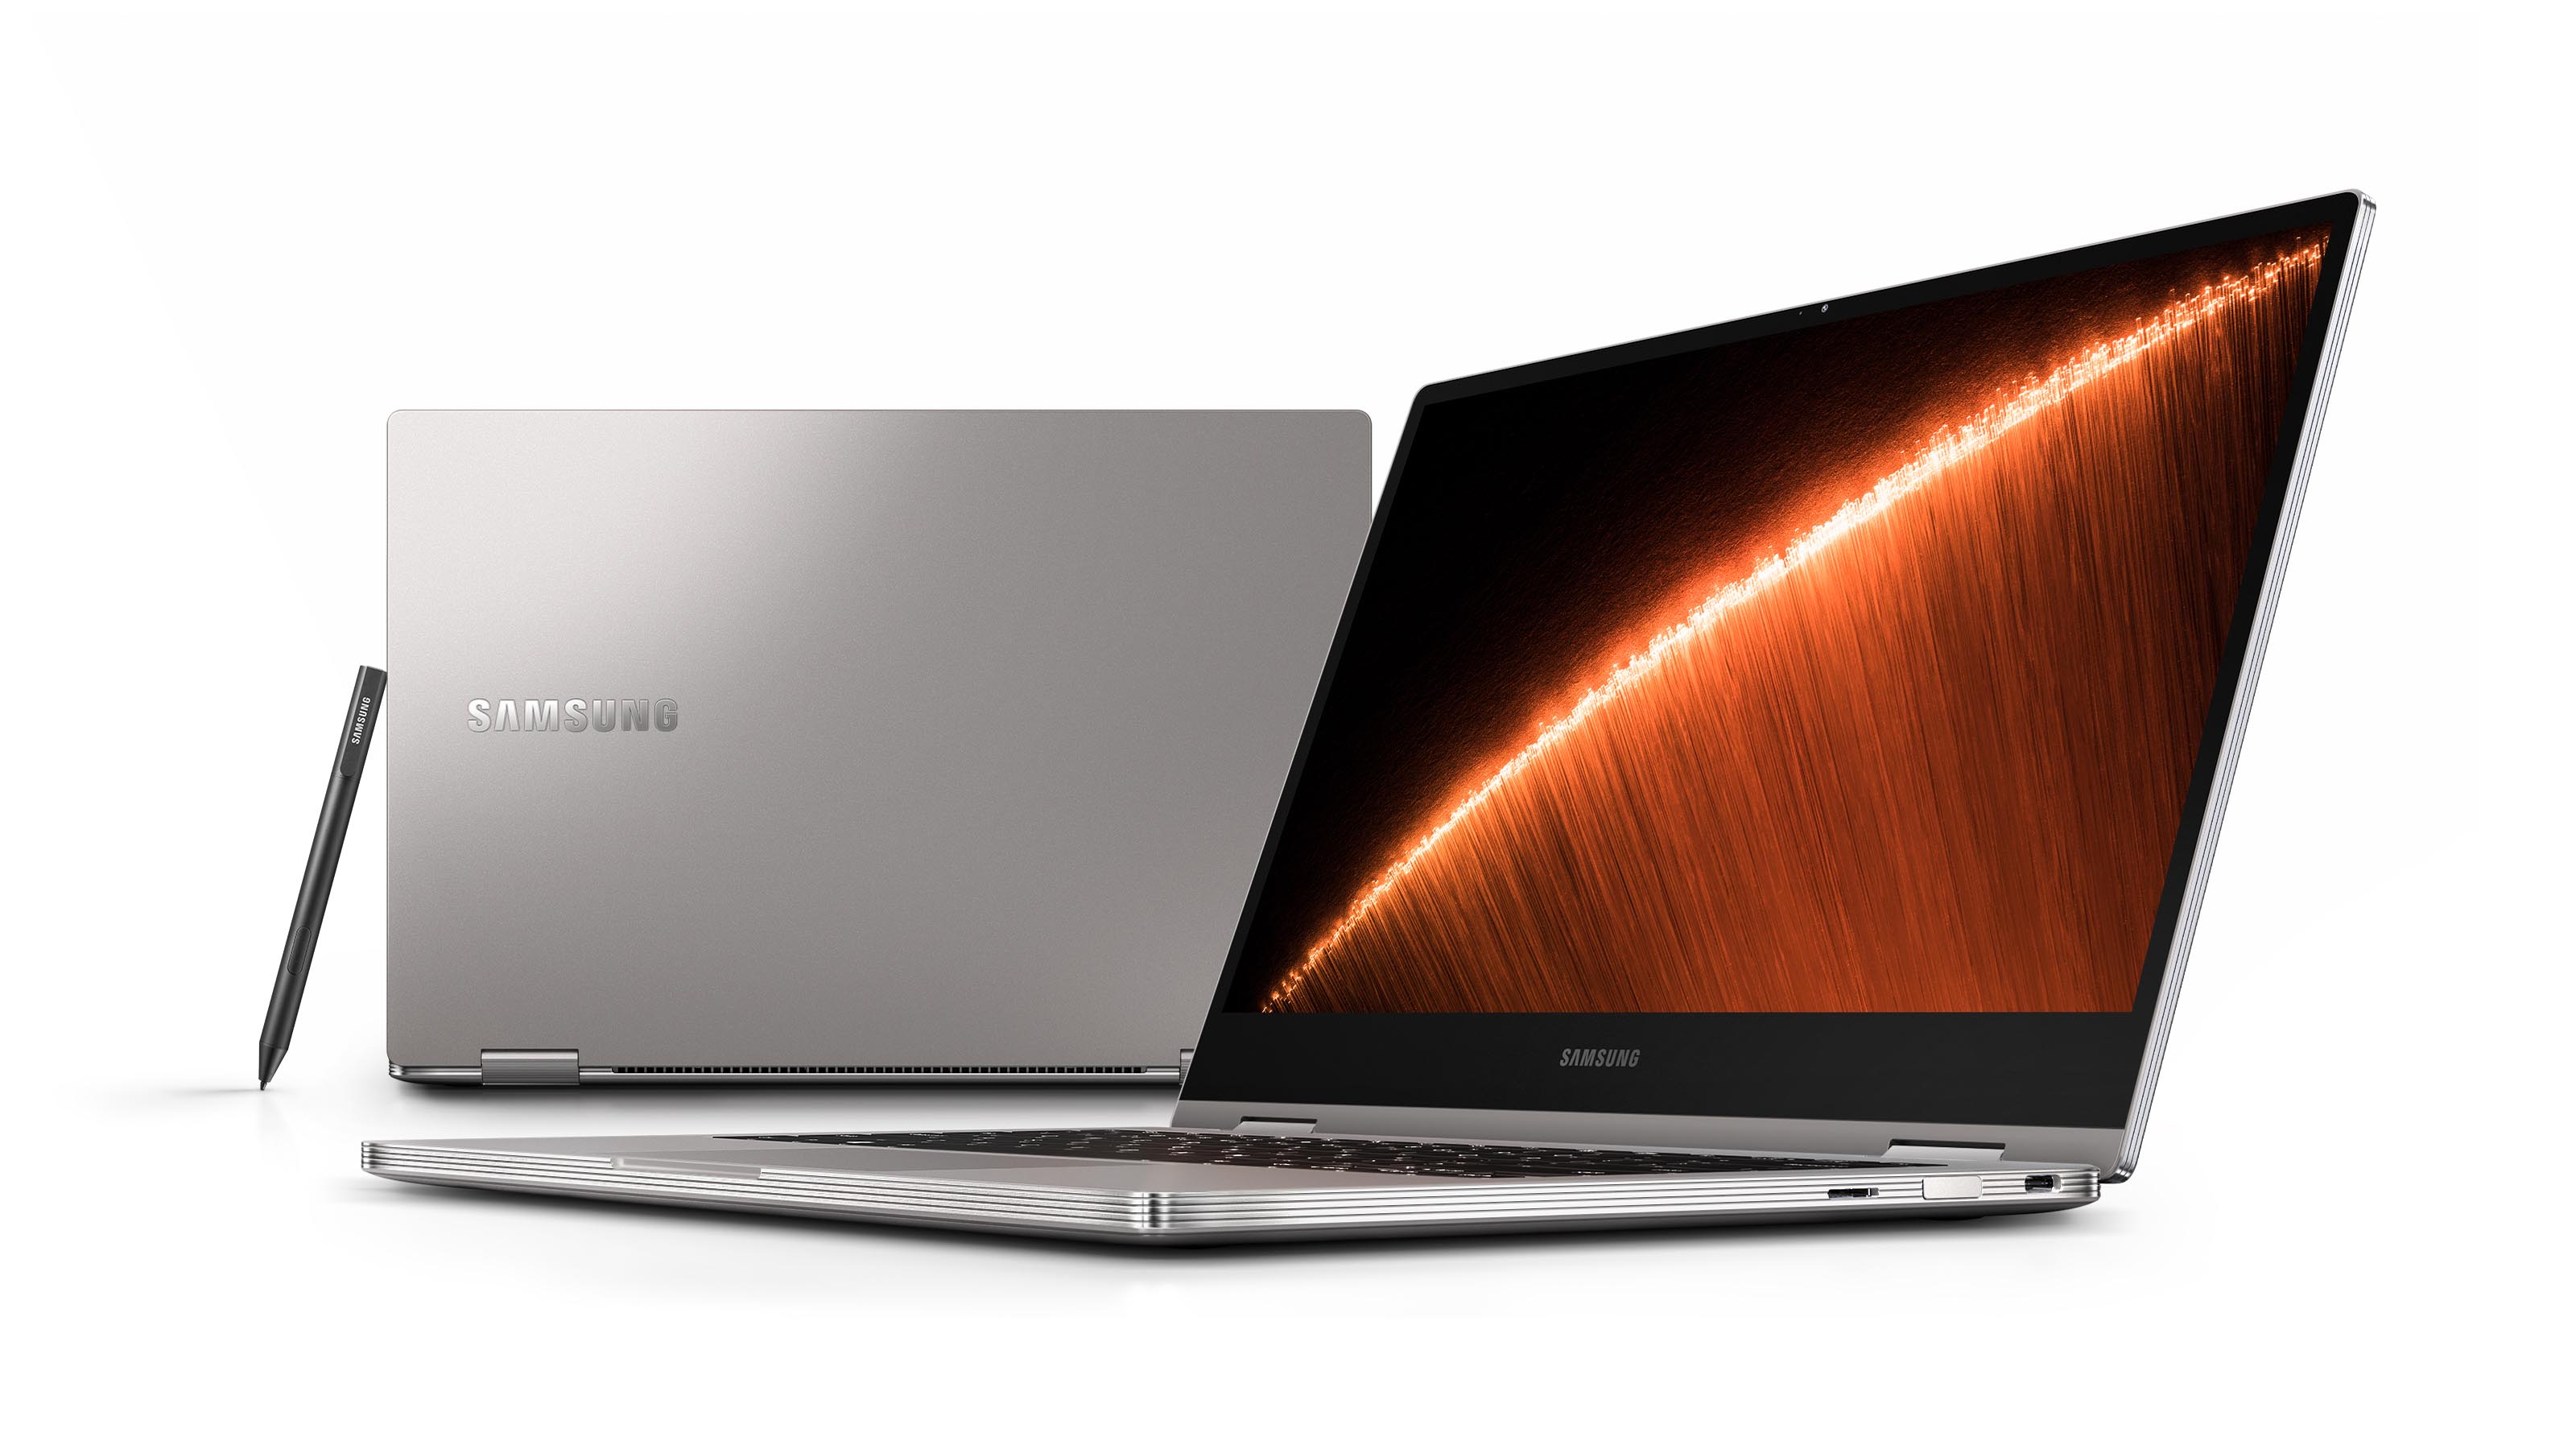 Samsung Notebook 9 Pro üst seviyeye hitap ediyor